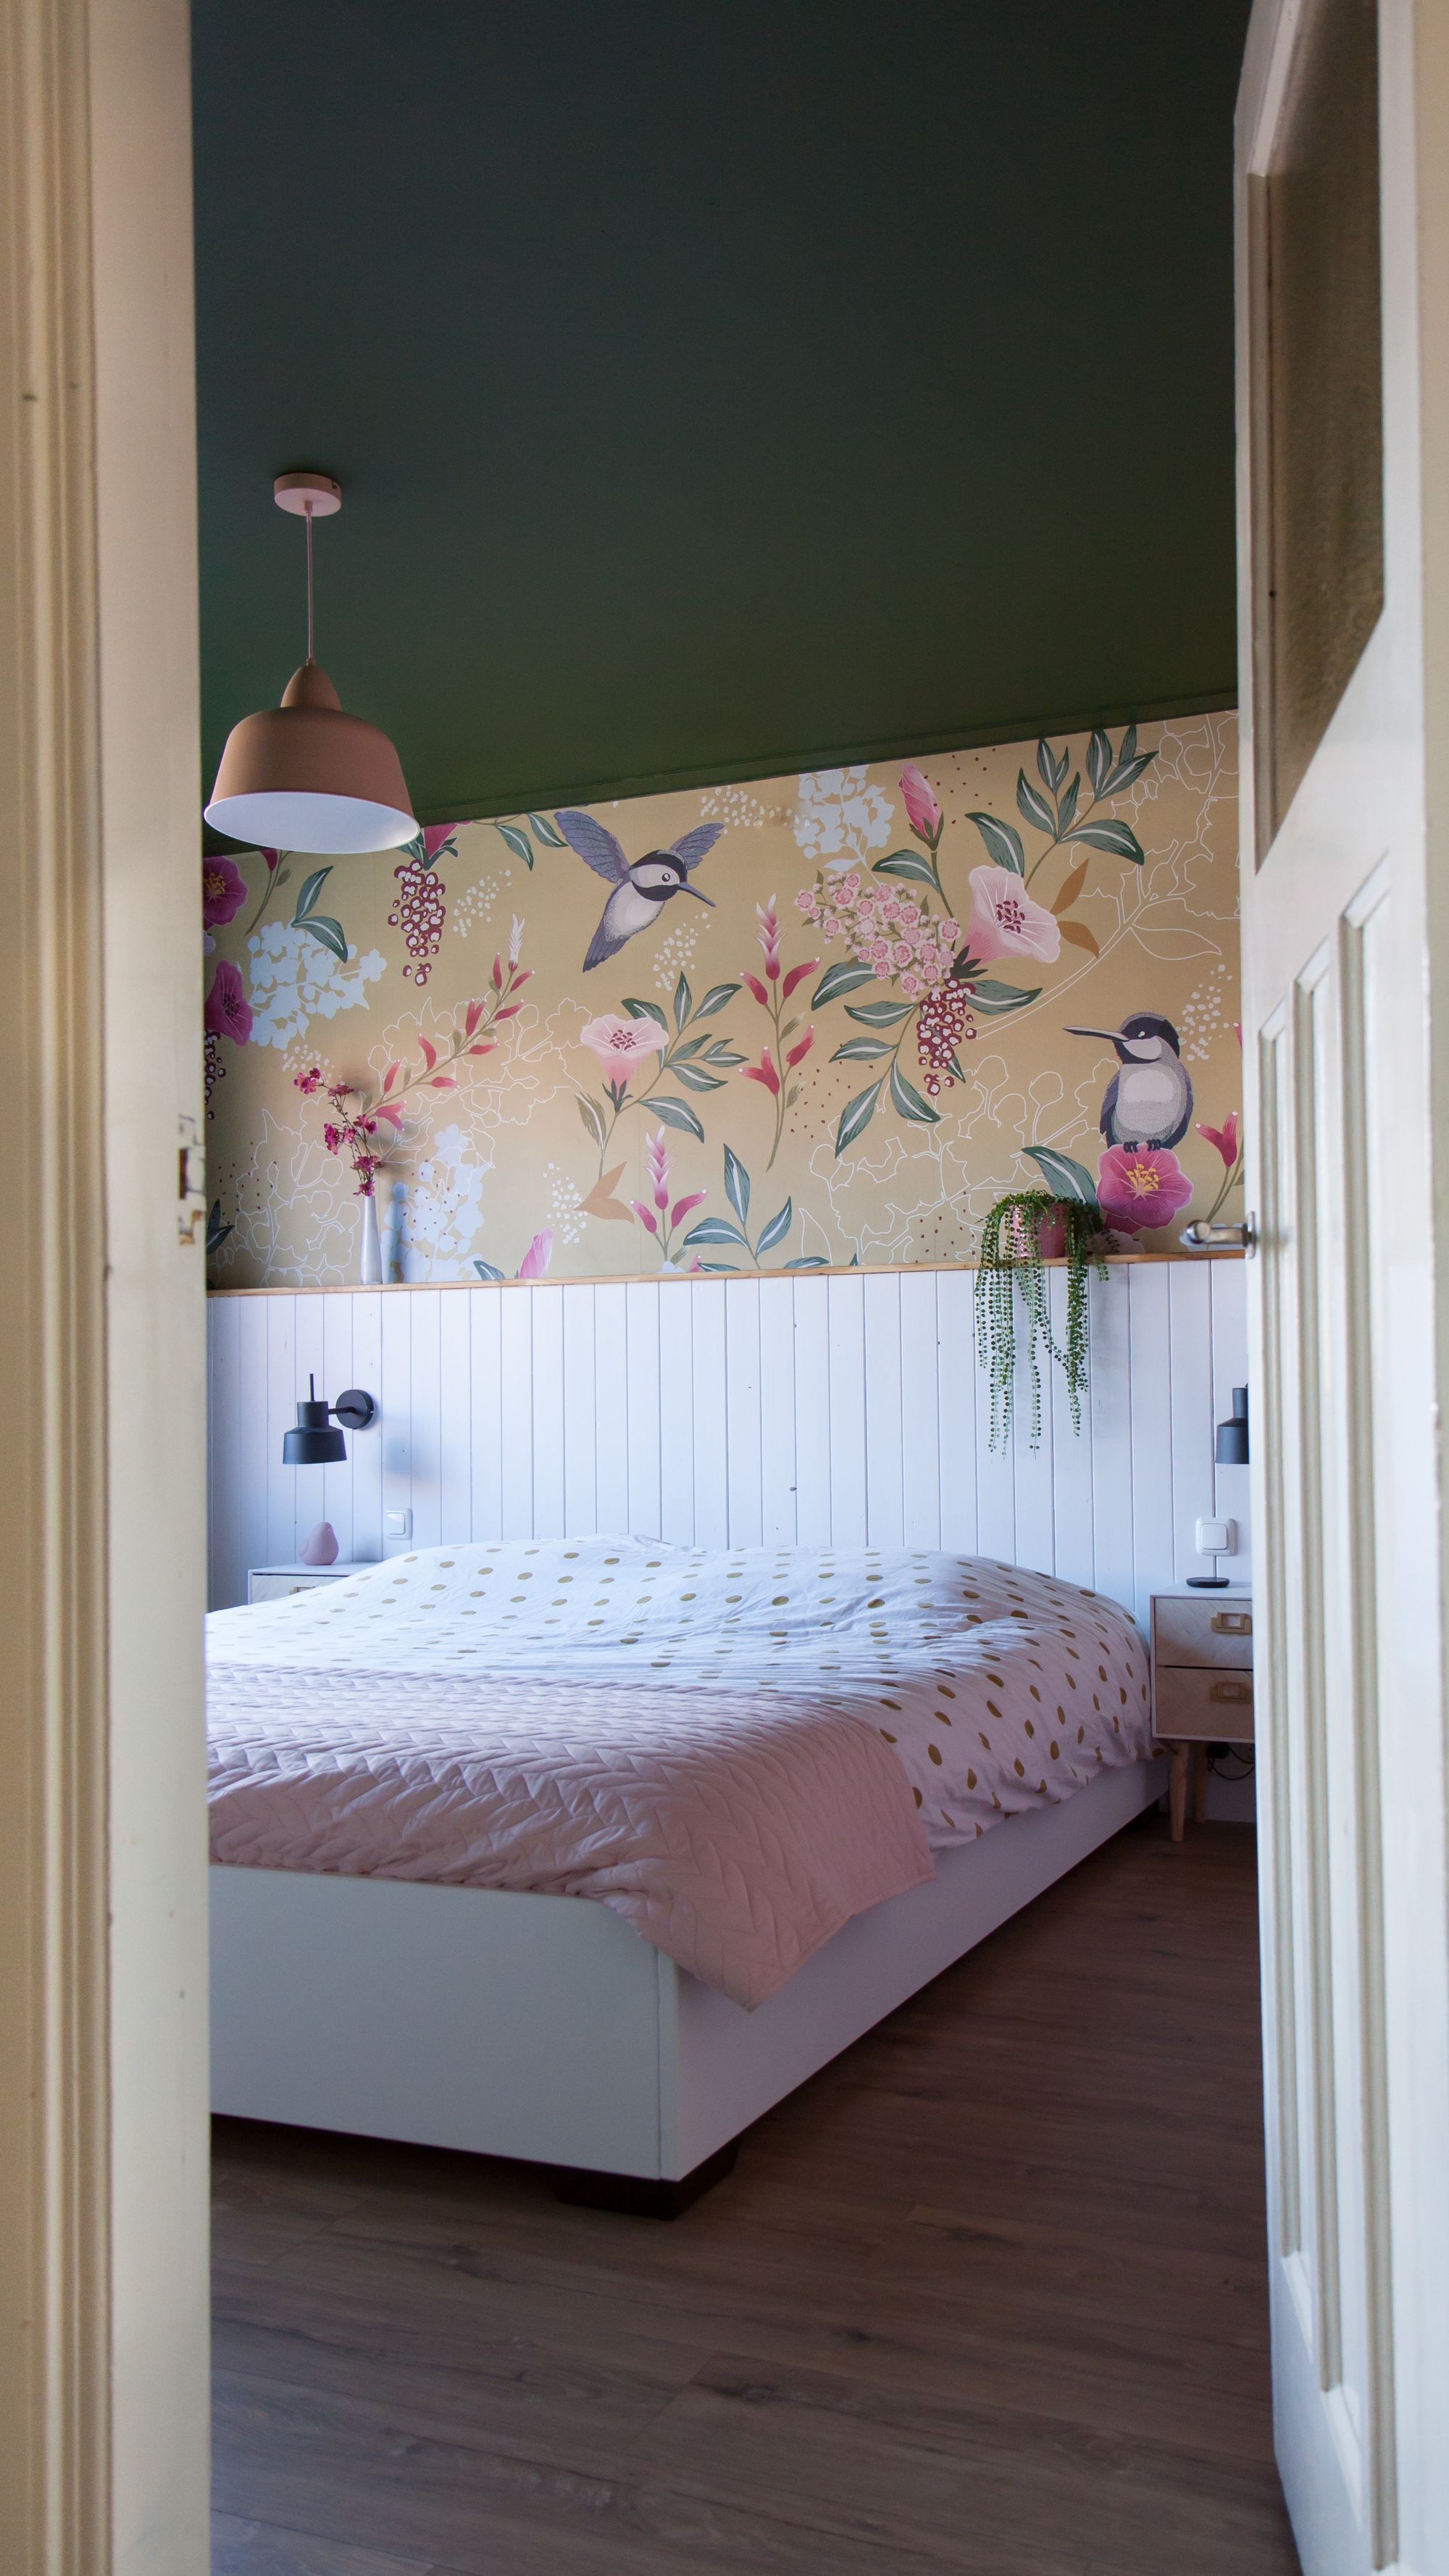 Slaapkamer inspiratie: Groen plafond in de slaapkamer